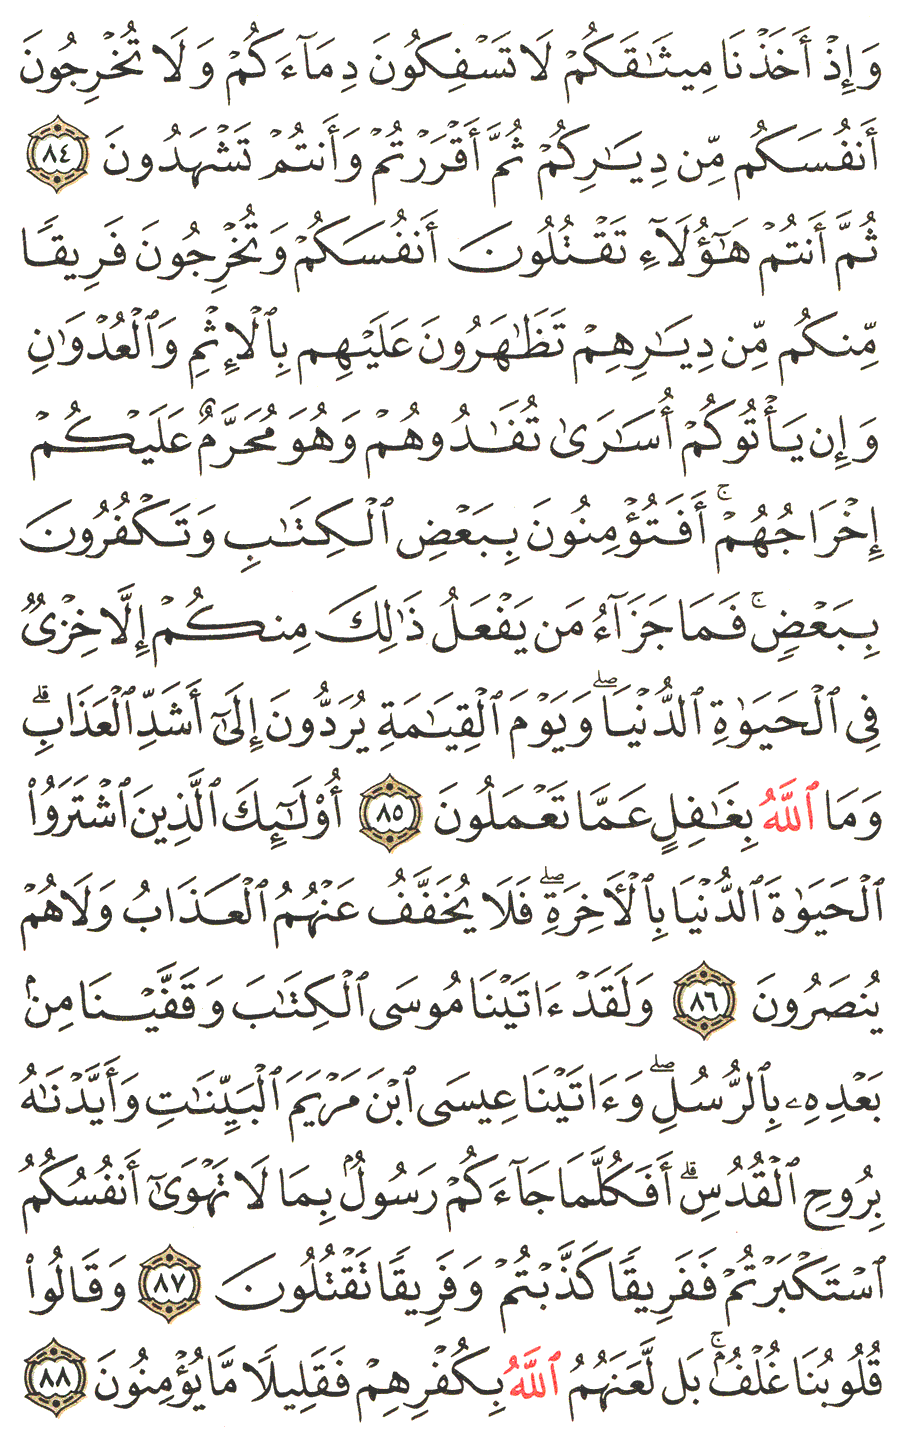 الصفحة رقم  13 من القرآن الكريم مكتوبة من المصحف